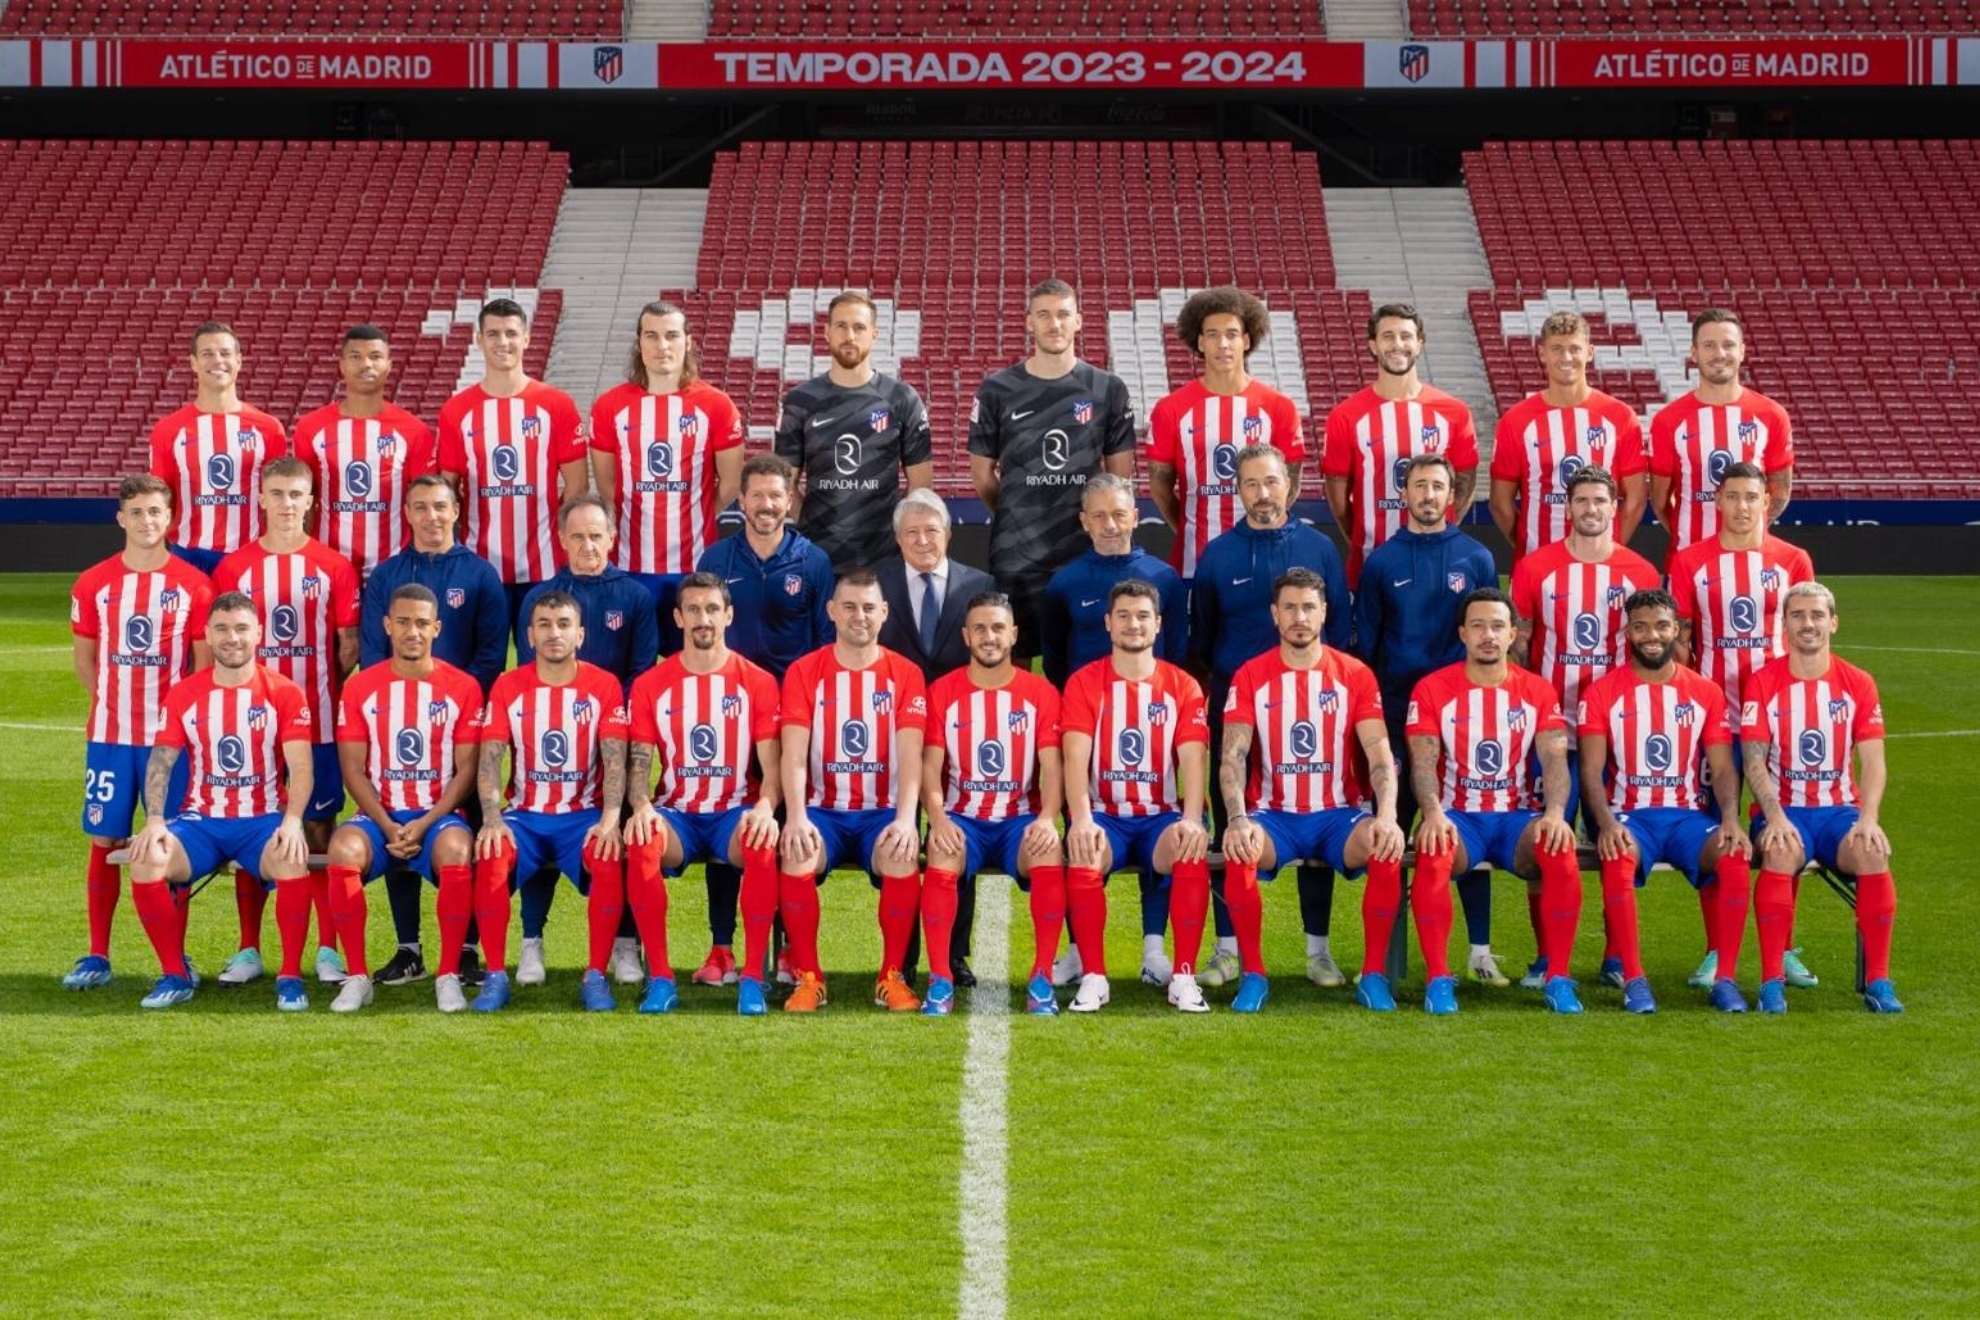 Dos tokenistas del Atlético de Madrid se cuelan en la foto oficial del equipo